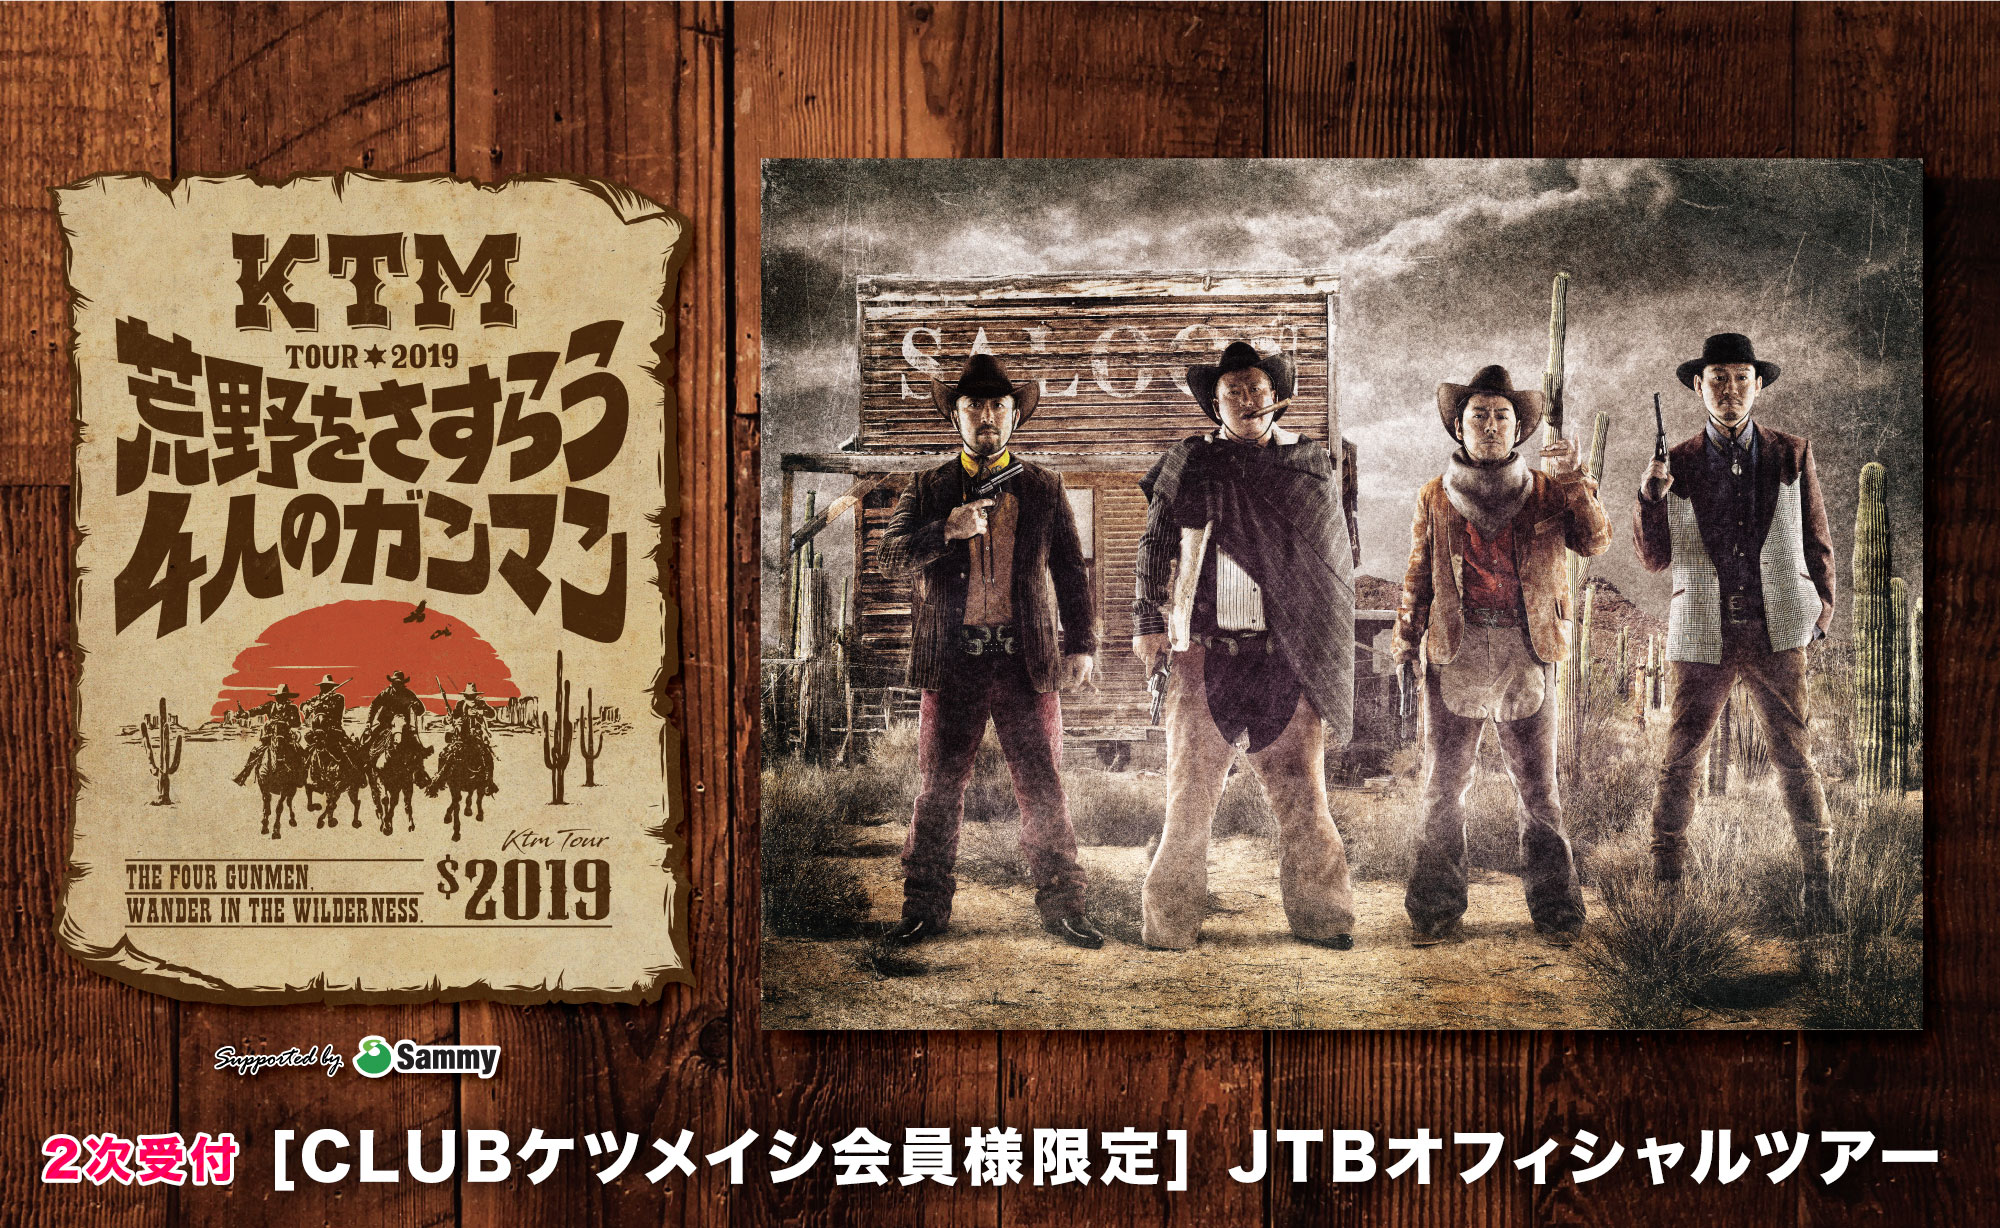 KTM TOUR 2019 荒野をさすらう4人のガンマン<